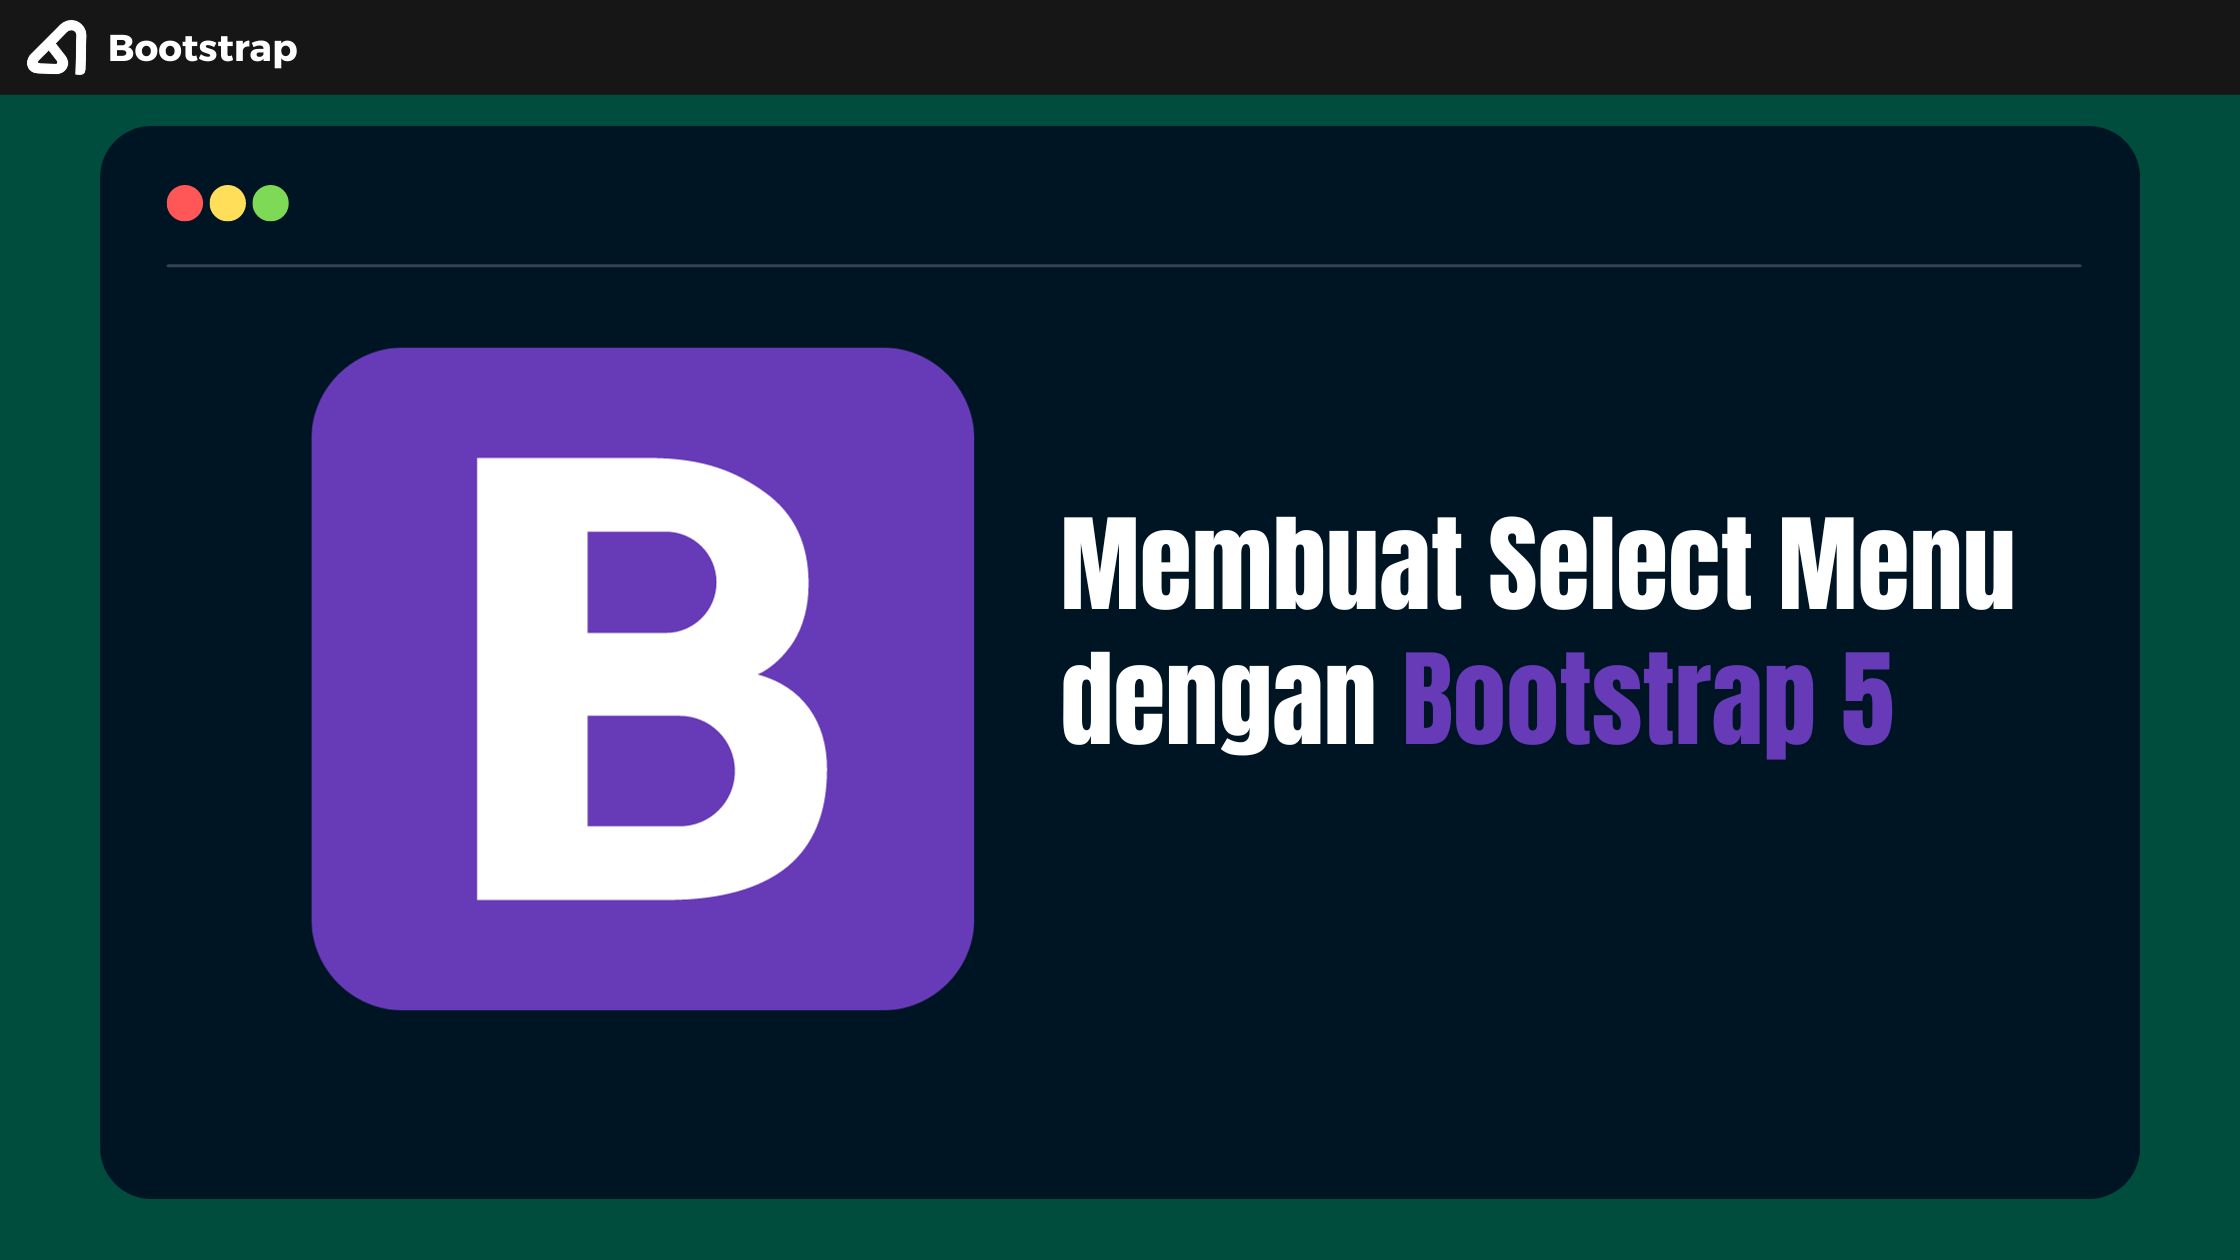 Membuat Select Menu dengan Bootstrap 5